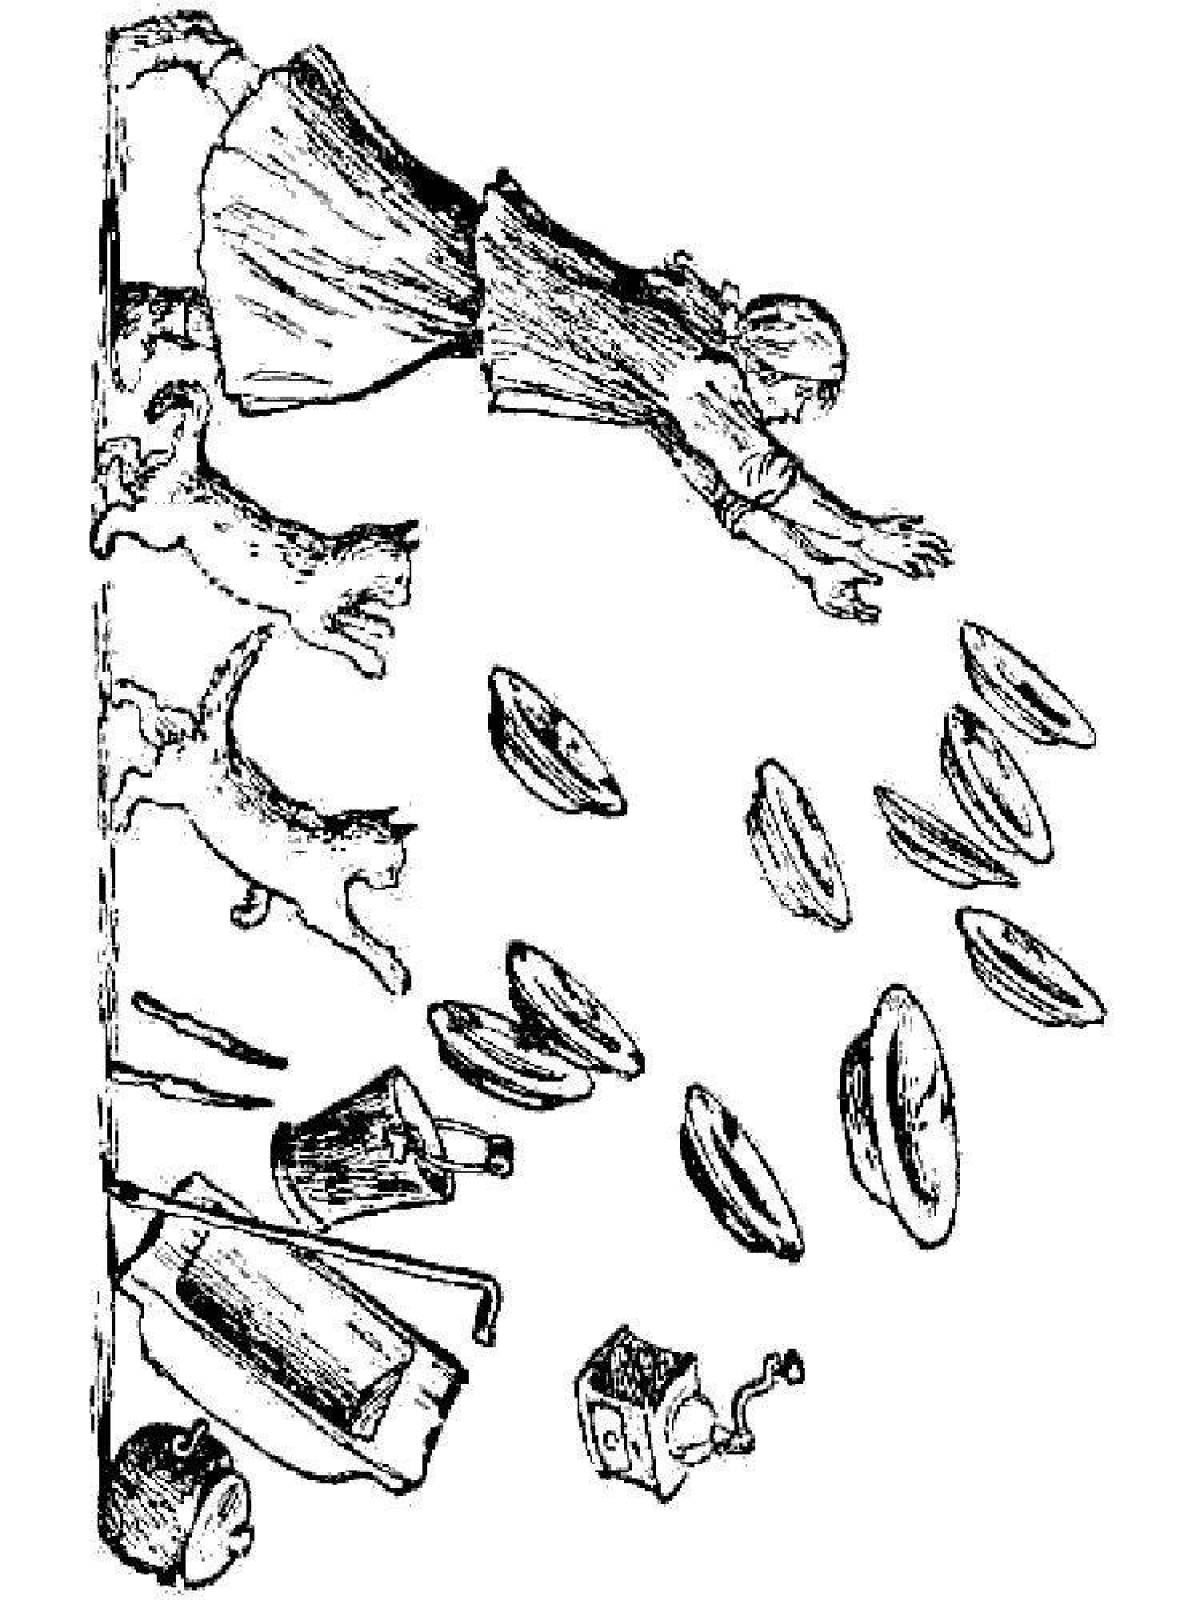 Радостное горе федорино, изображение 2-го класса